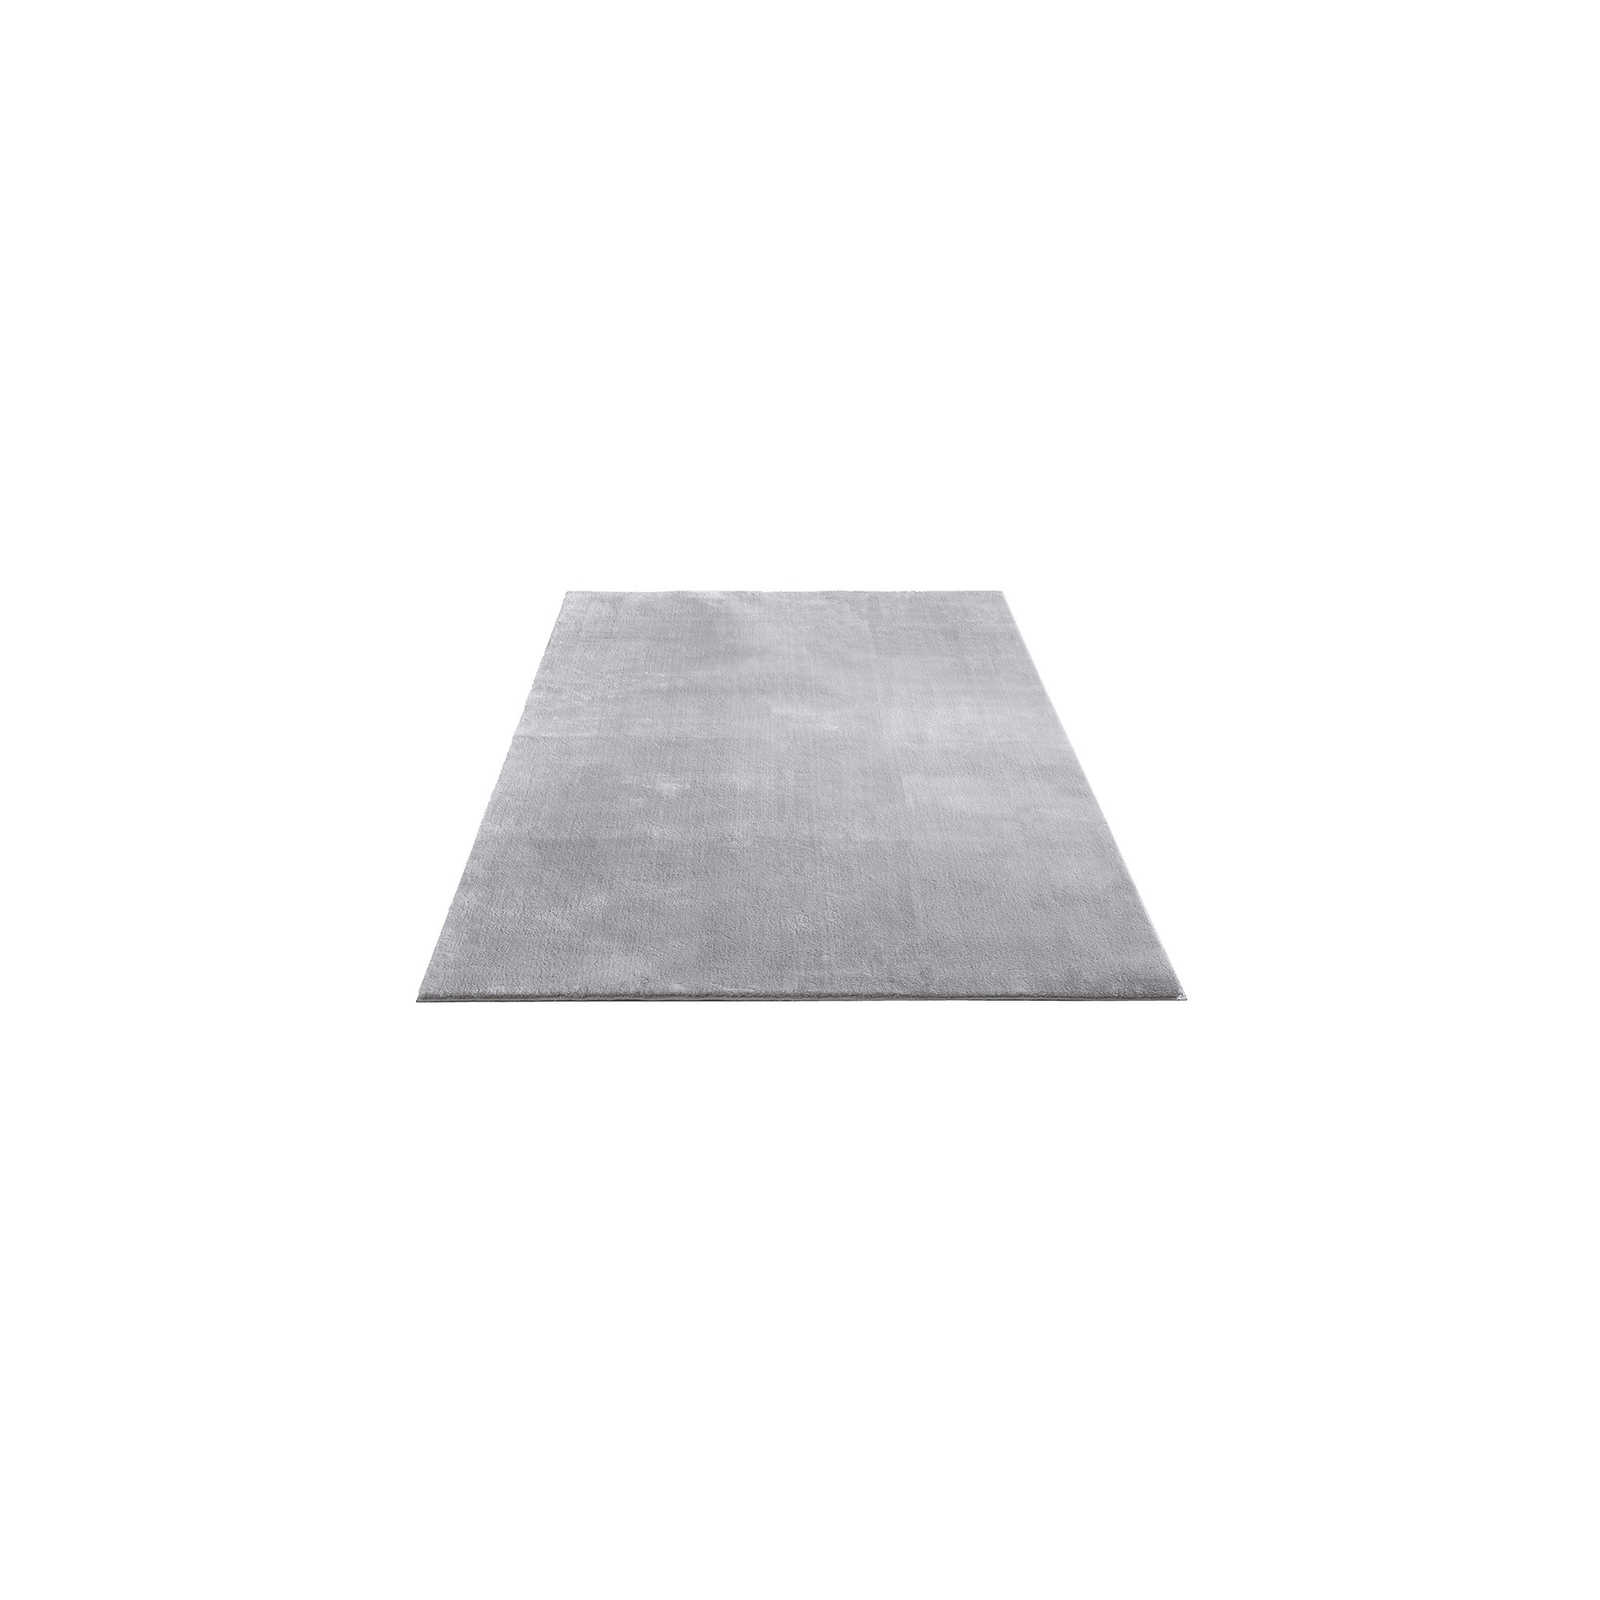 Fijn hoogpolig tapijt in grijs - 170 x 120 cm
